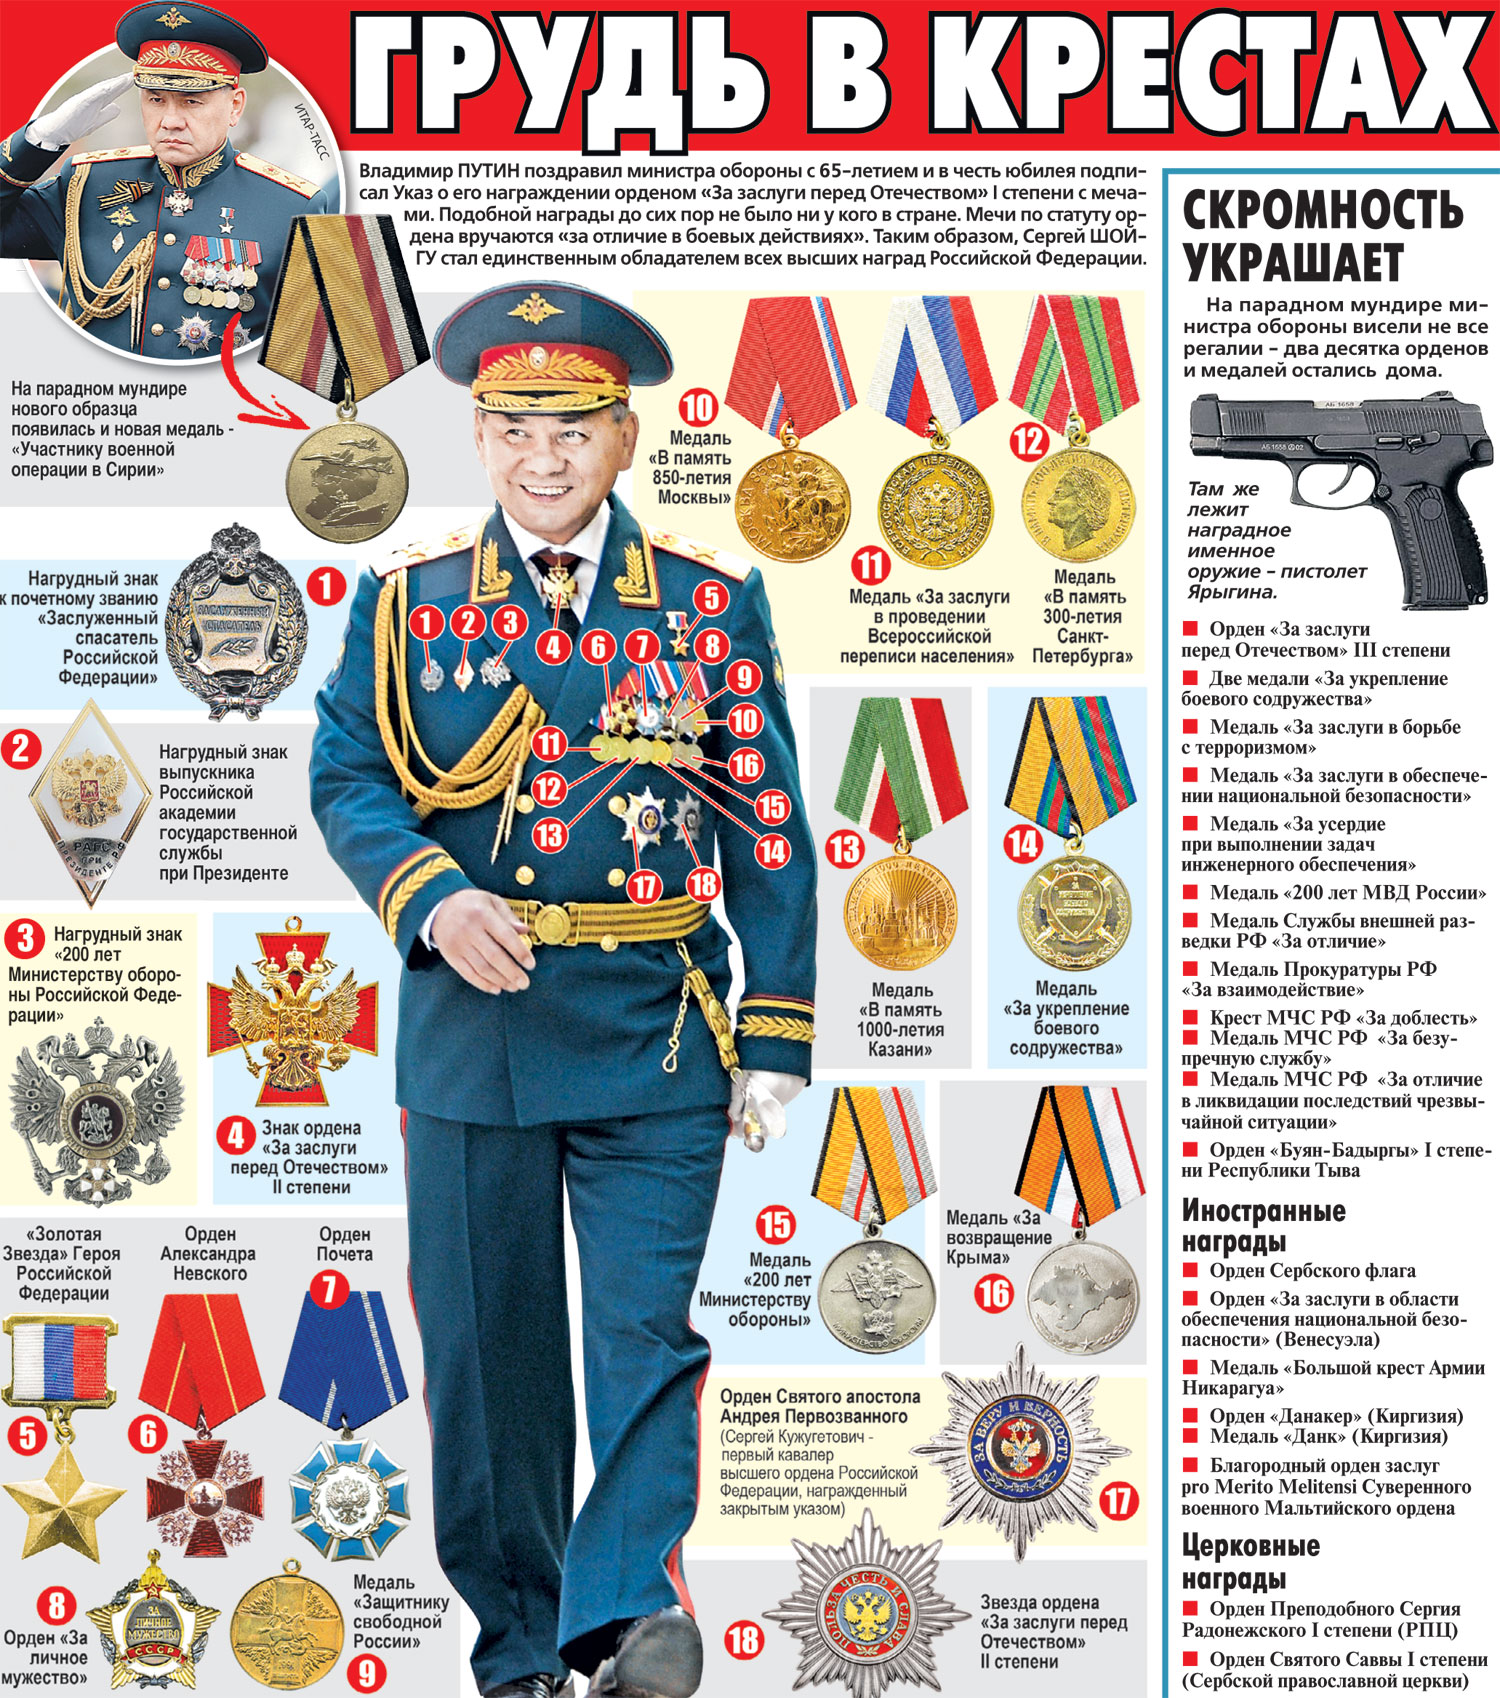 Ордена и медали Сергея Шойгу